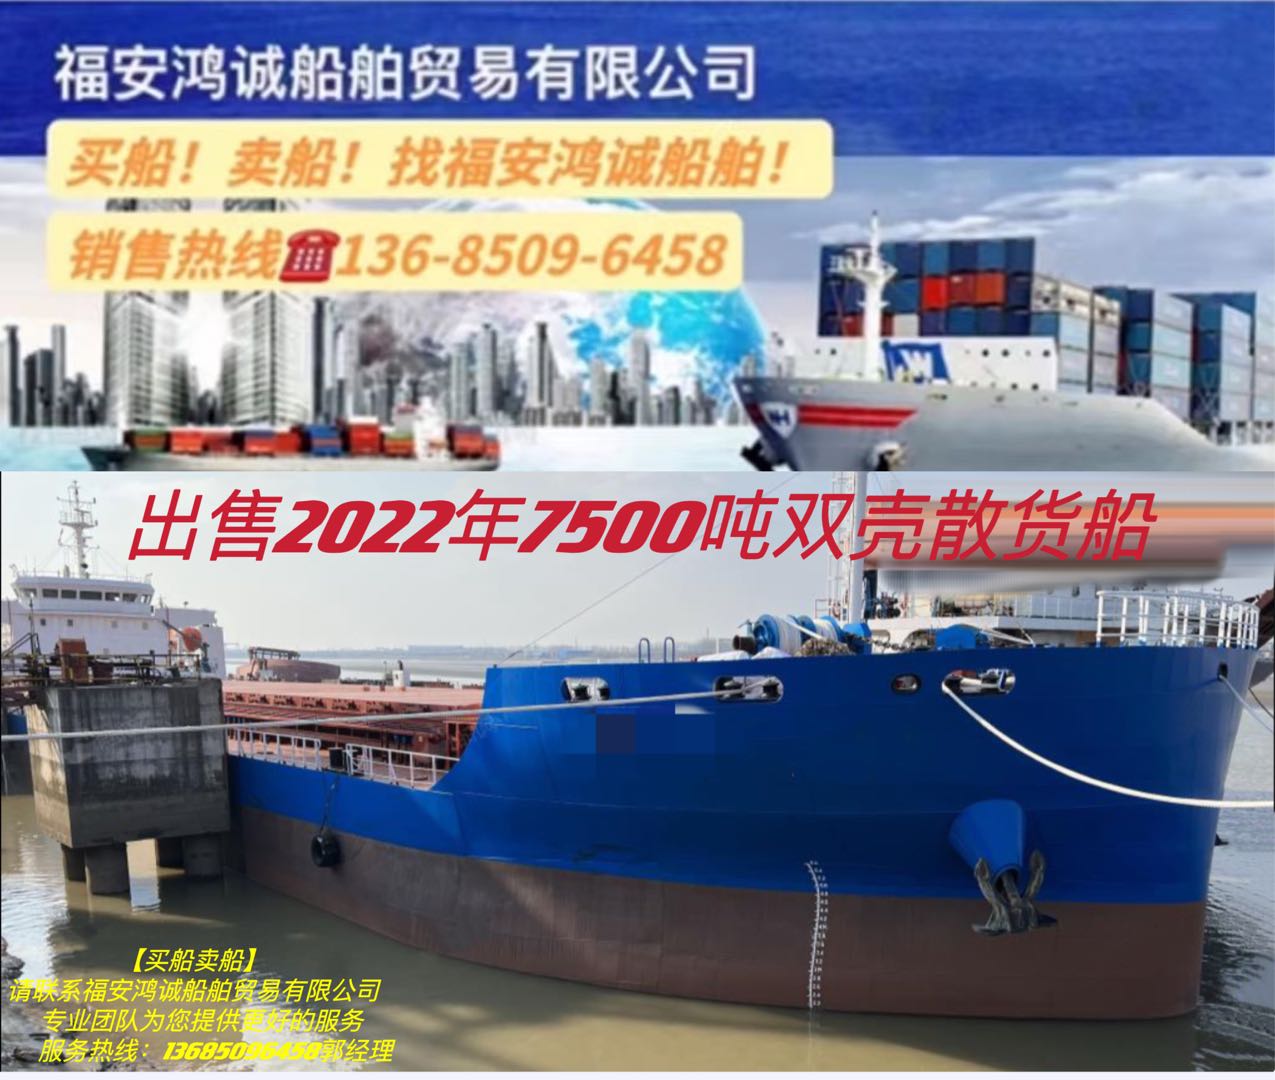 出售2022年7500吨双壳散货船